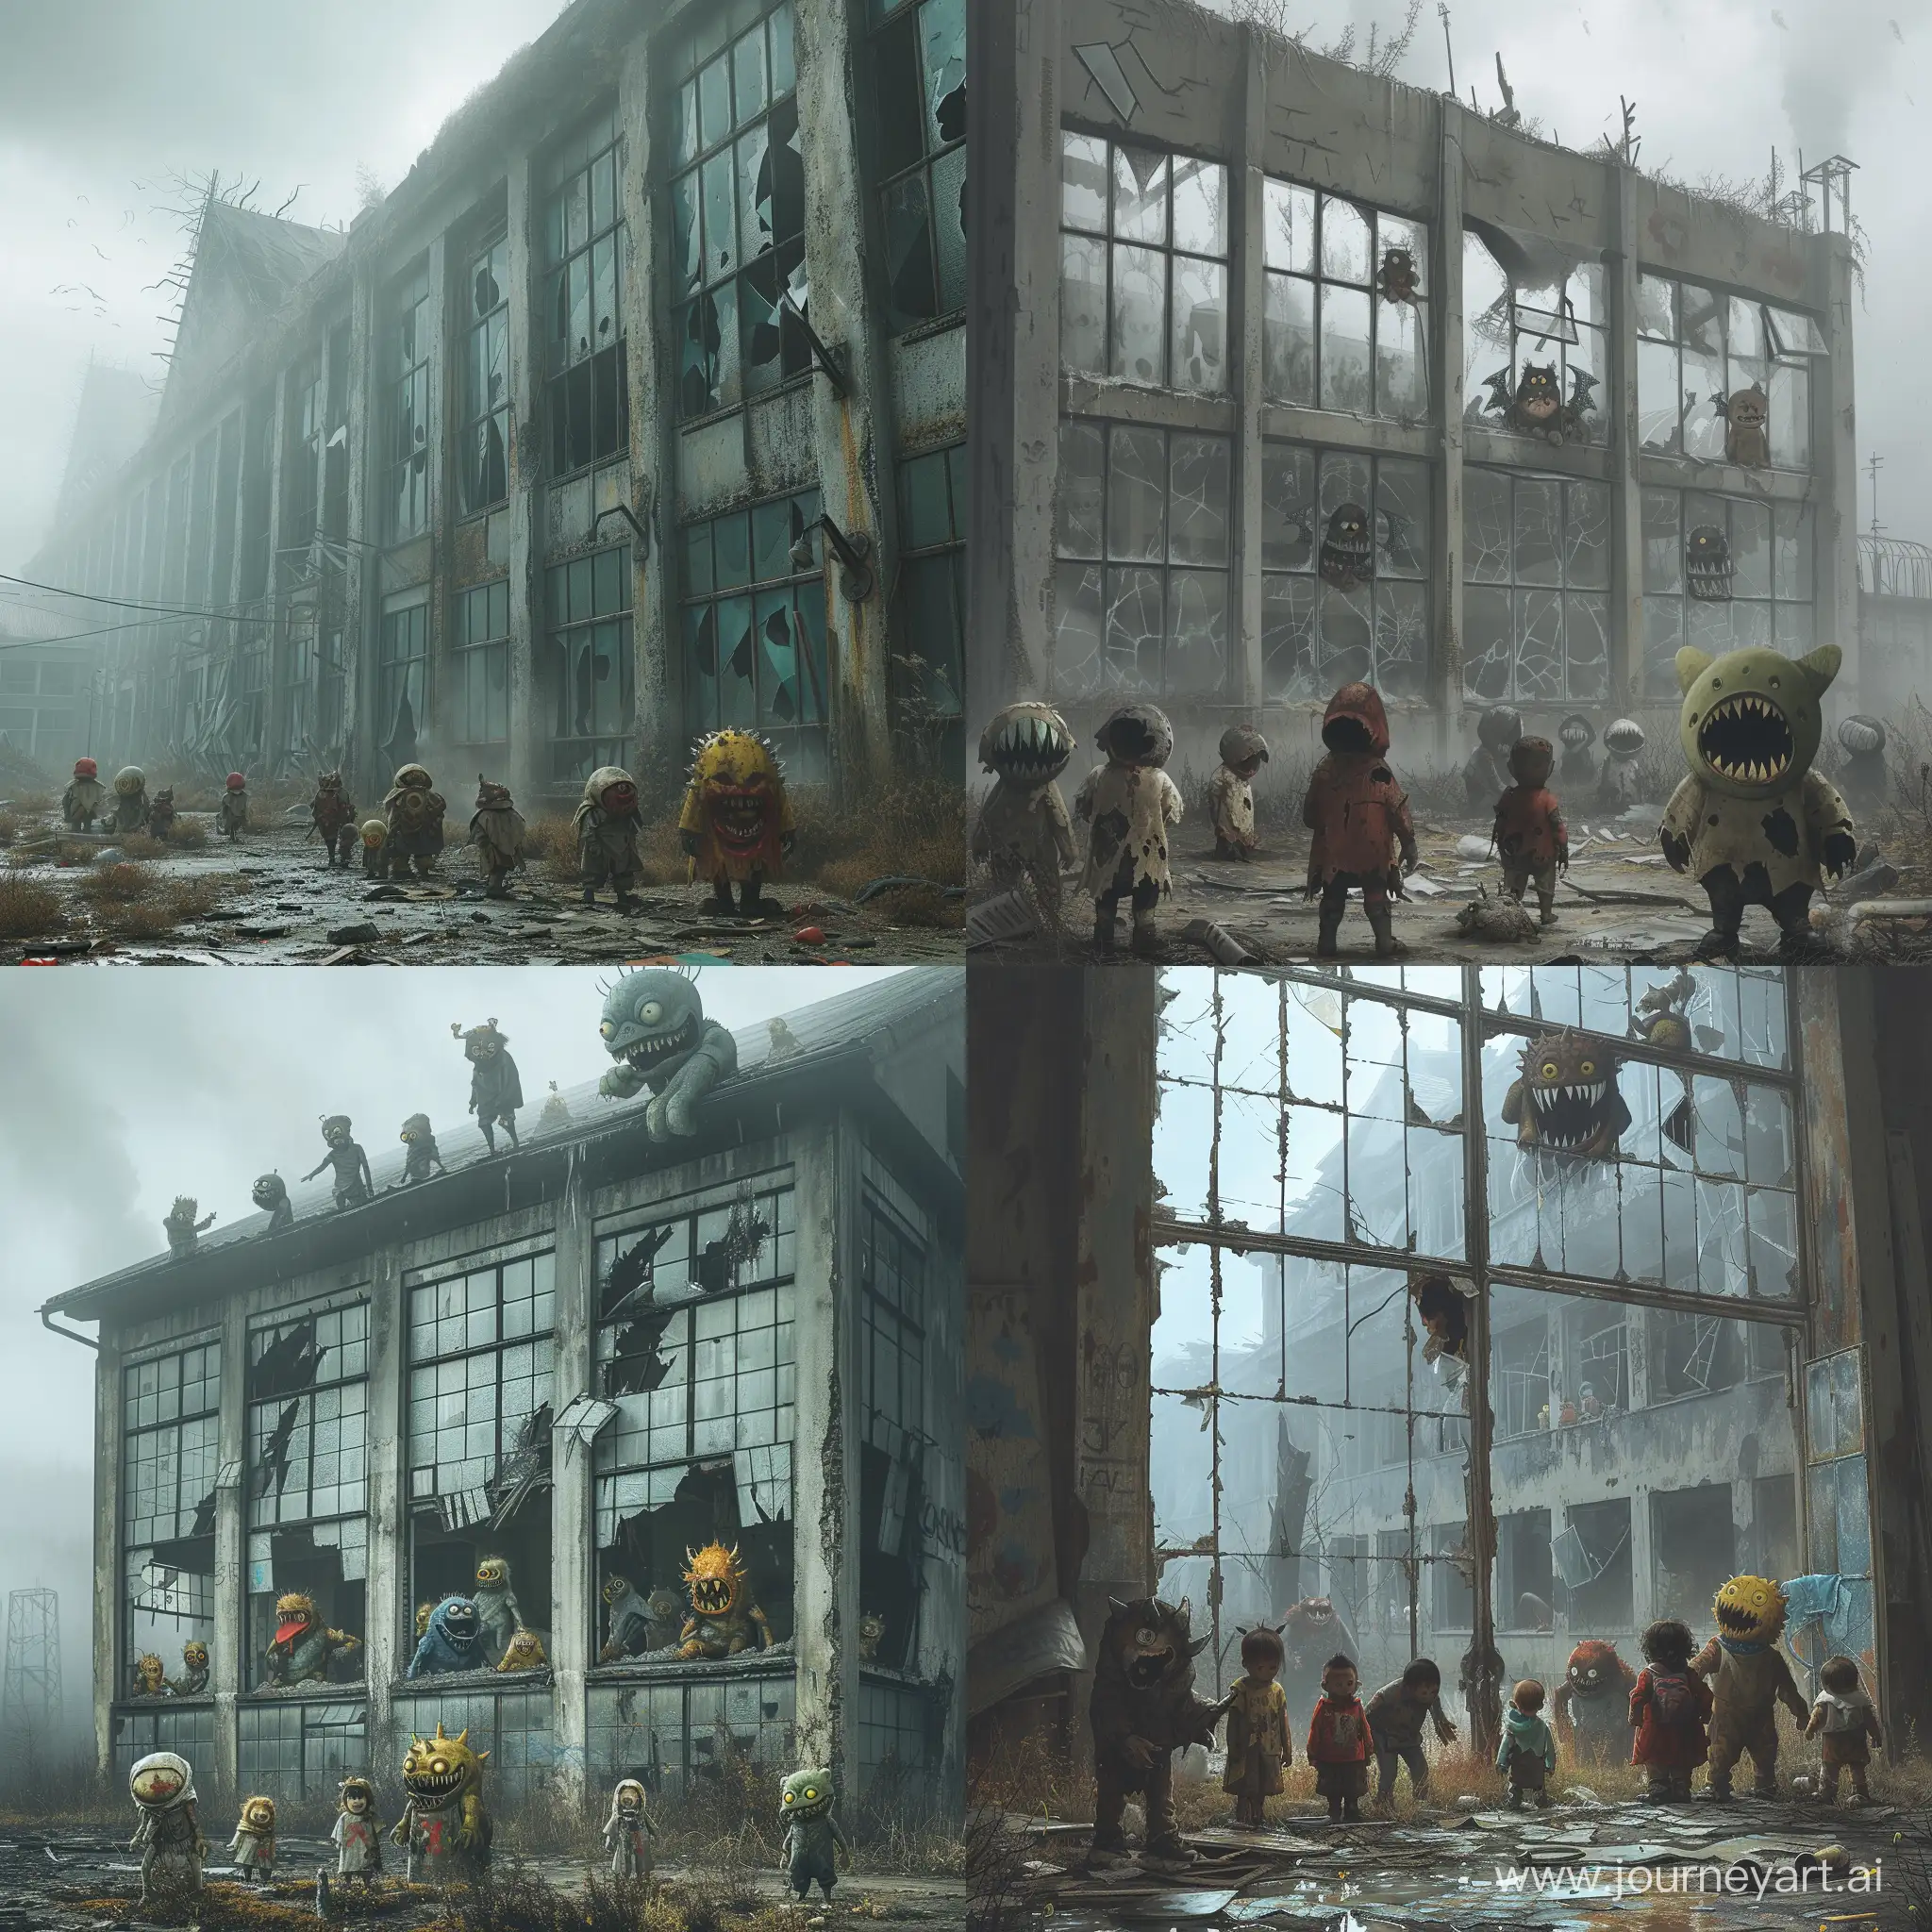 Заброшенный, сломанный техникум, в нем выбиты окна, в некоторых окнах стоят монстры, перед техникумом стоят маленькие дети в порванной и грязной одежде, на улице пасмурная погода и туман